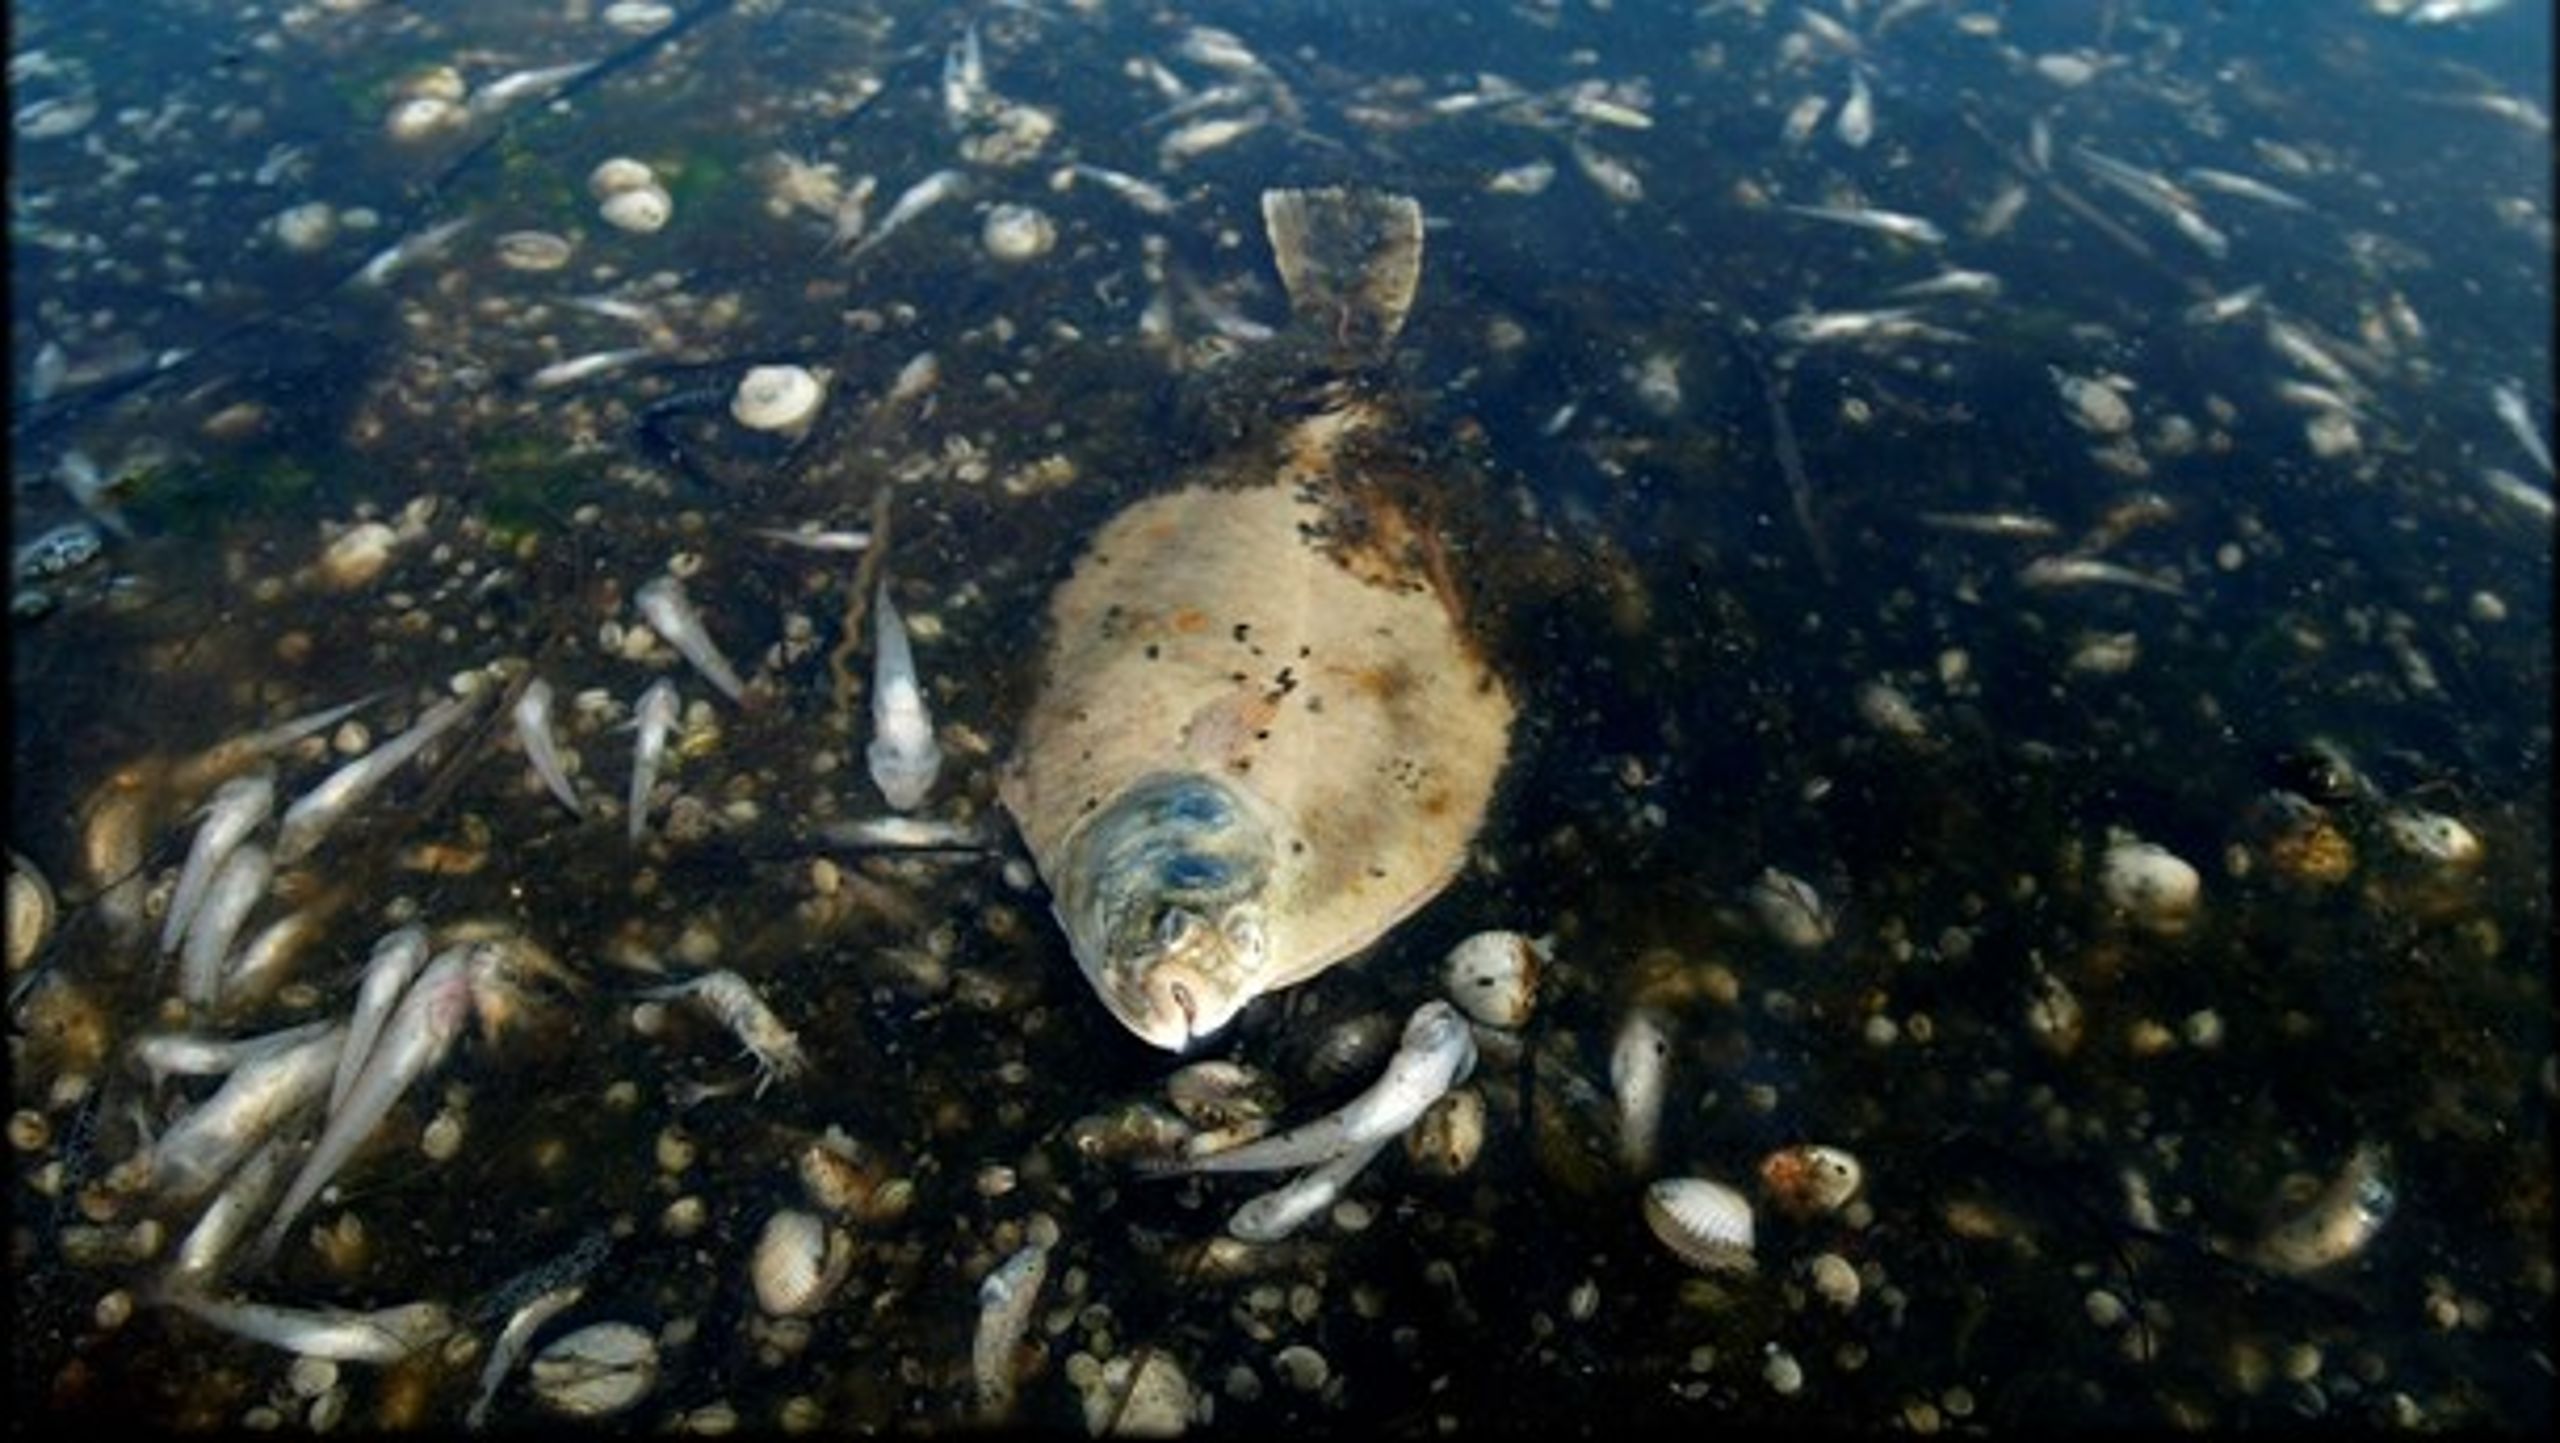 Over 80 procent af de danske havområder er i decideret dårlig økologisk stand. Bundtrawlfiskeri er en af de væsentligste årsager, mener Alternativet.